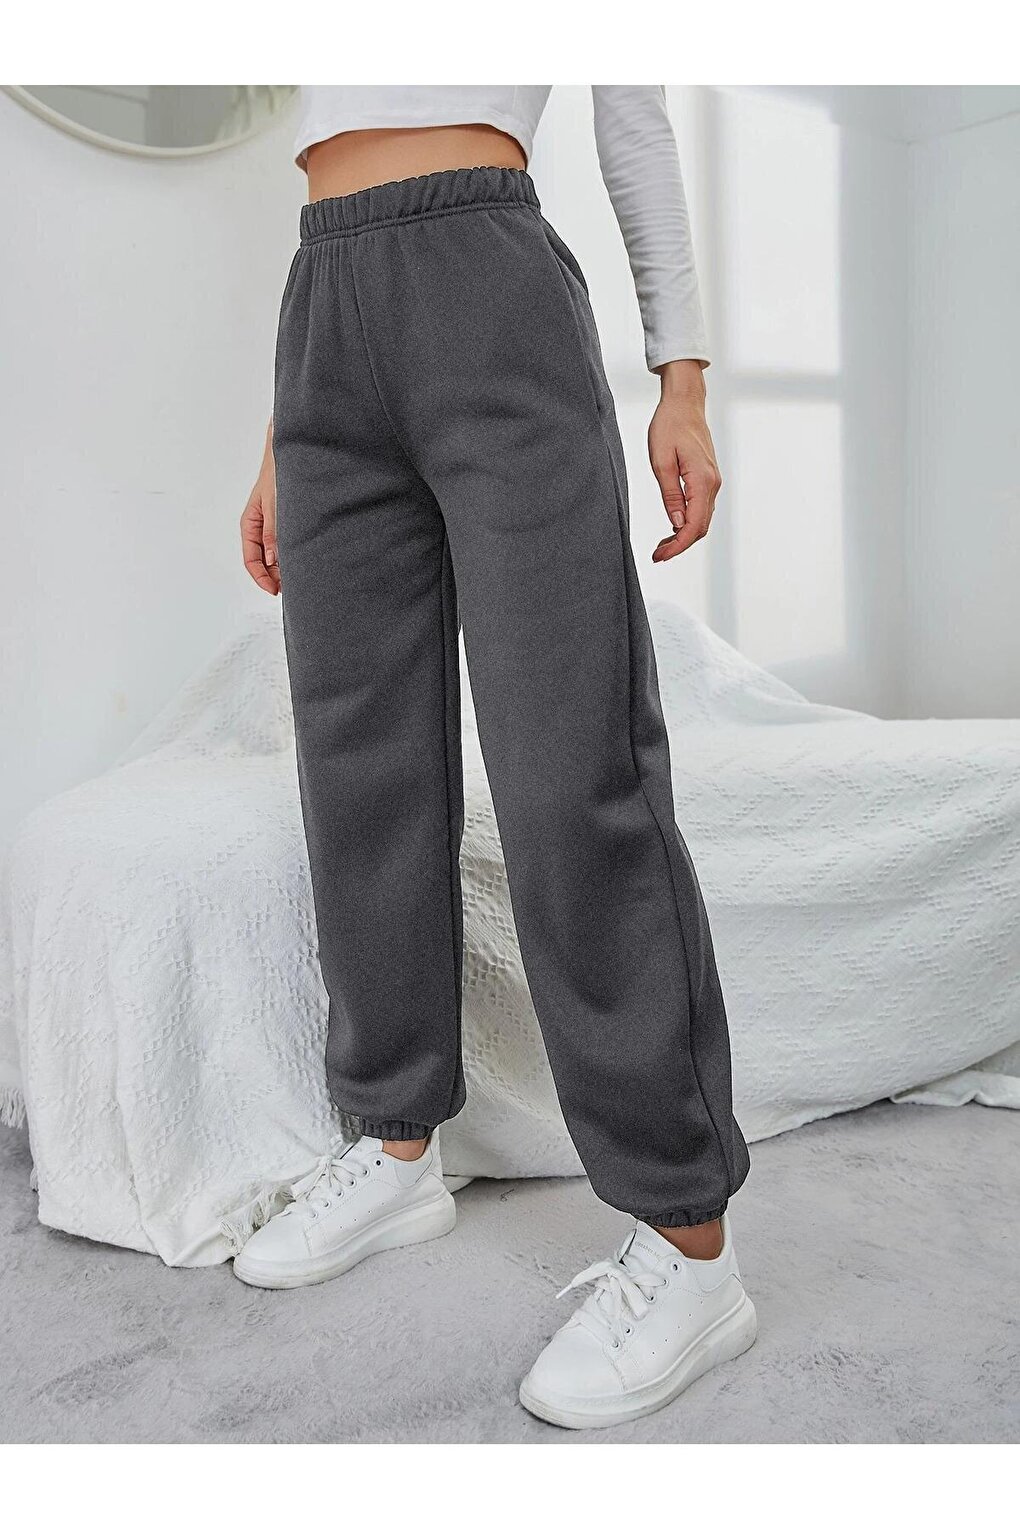 цена Женские спортивные штаны из дымчатой резины Trendseninle